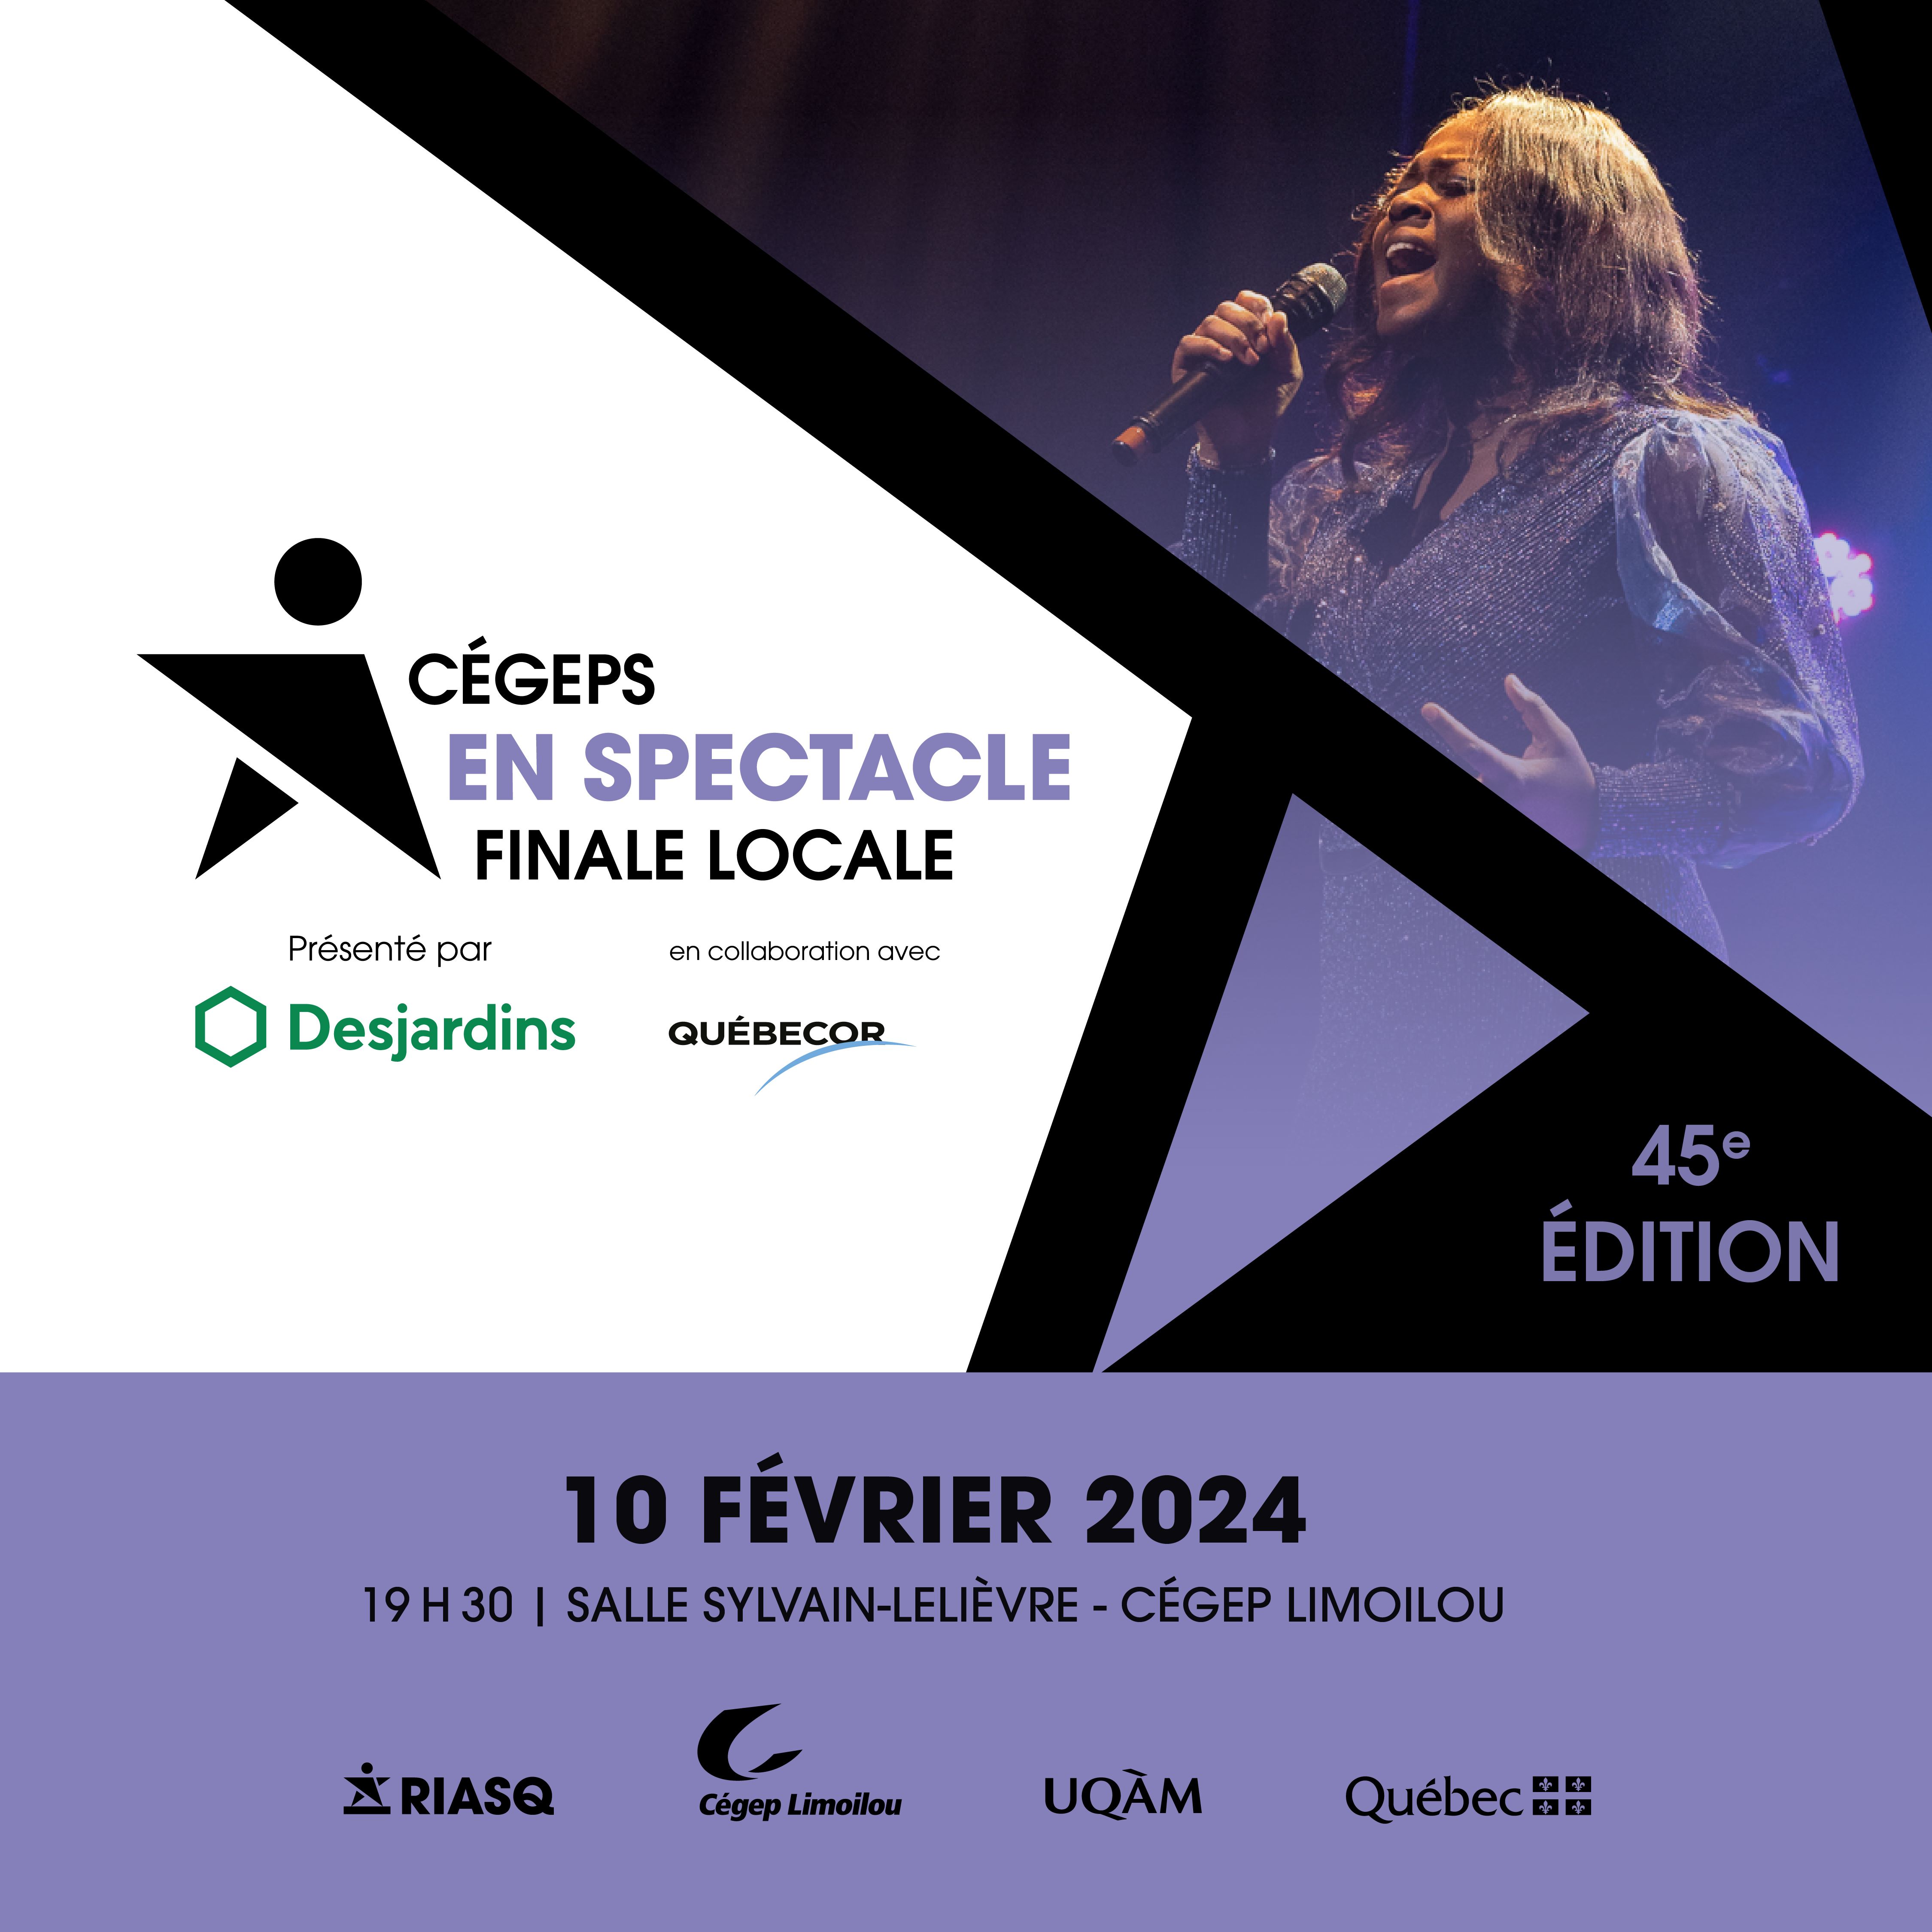 Cégeps en spectacle finale locale présenté par Desjardins en collaboration avec Québécor 10 février 2024 19 h 30 Salle Sylvain-Lelièvre Cégep Limoilou